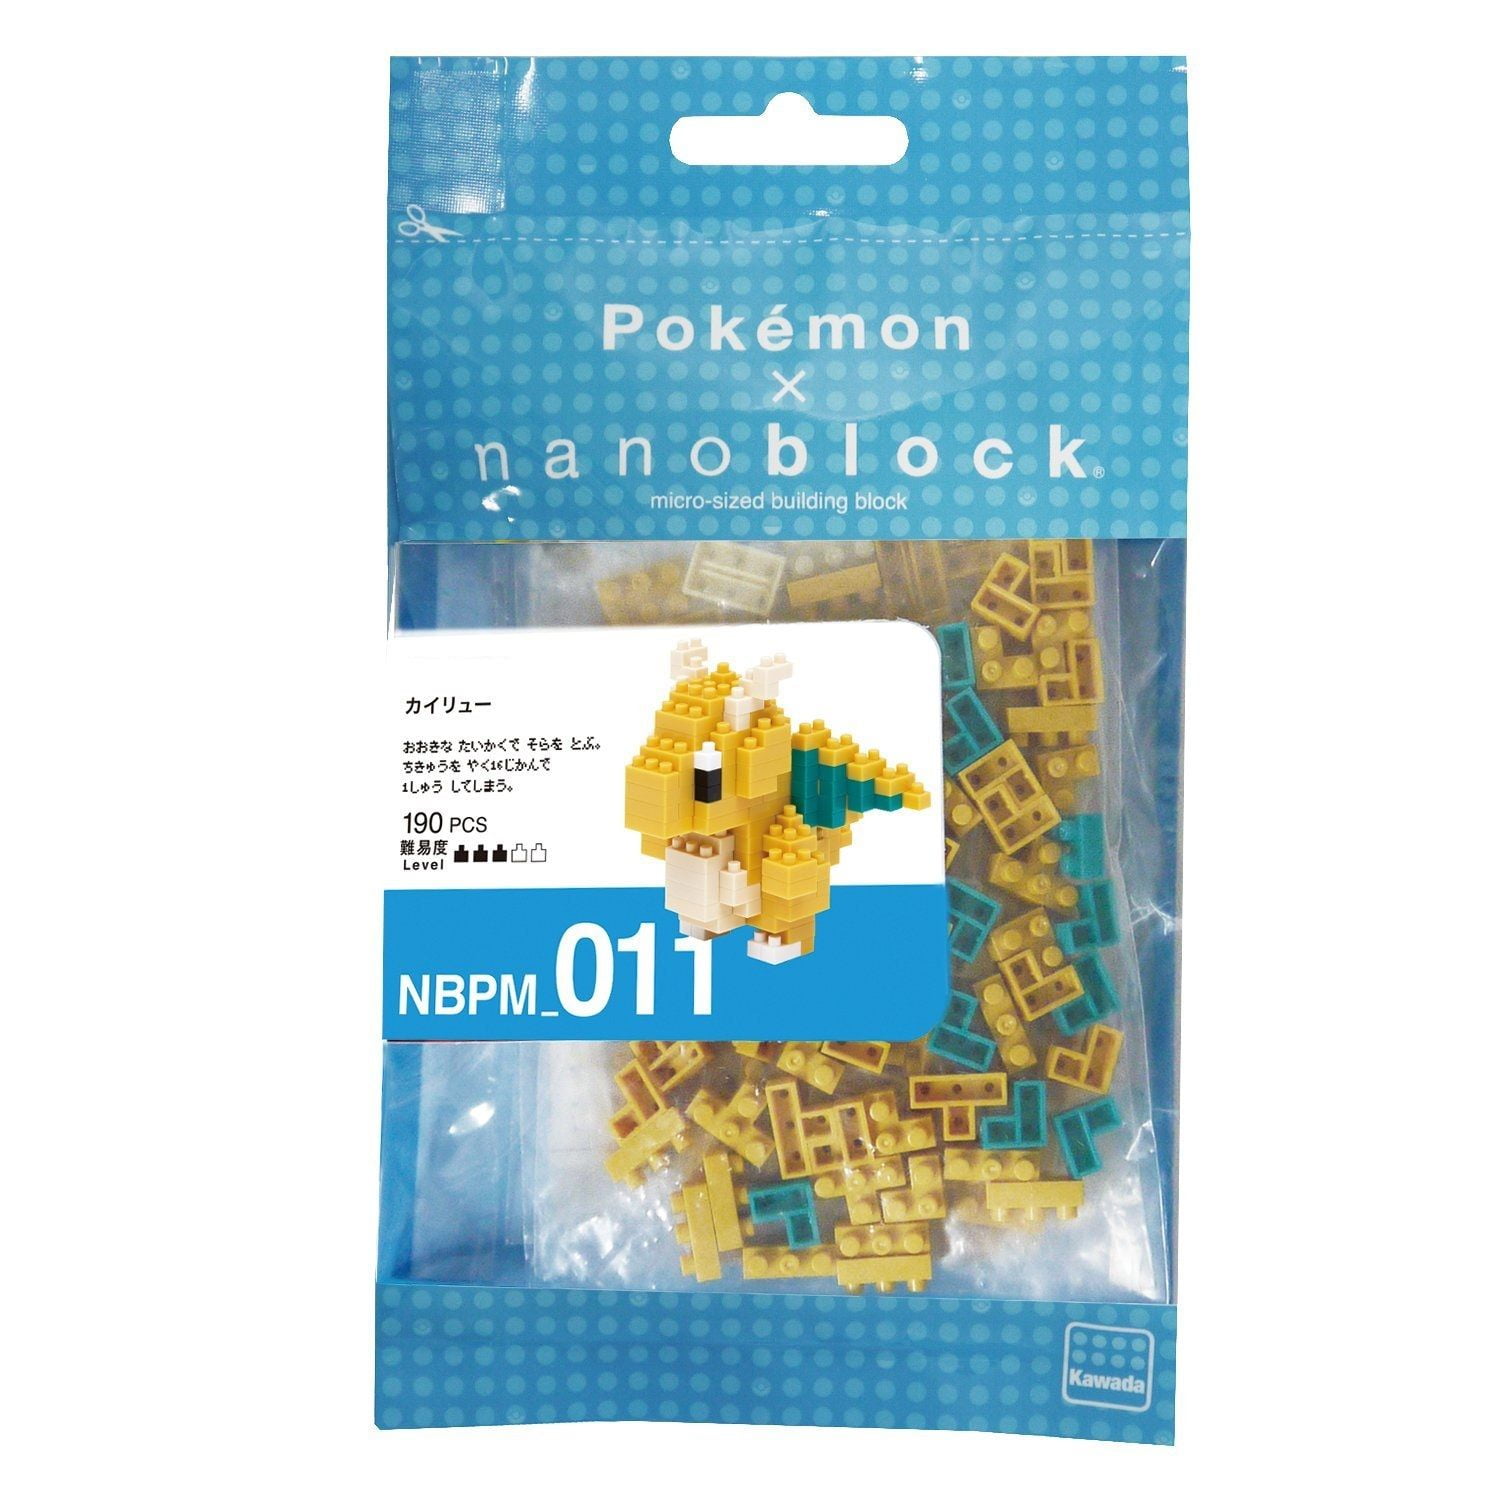 Nanoblocks Pokemon Dragonite Building Set #011 